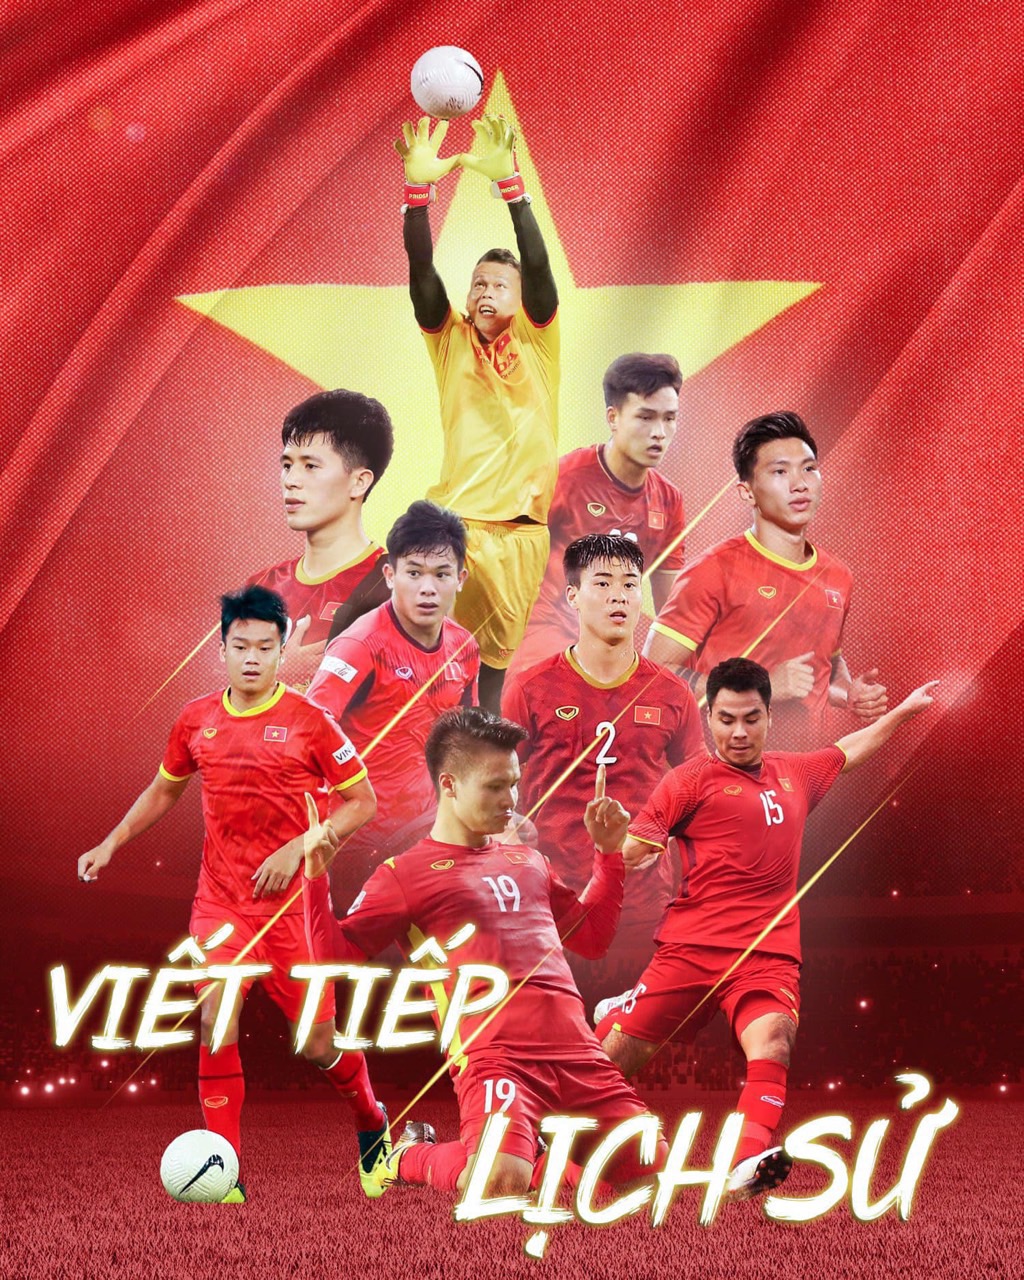 Tranh Ảnh Poster Treo Đội Tuyển Bóng Đá Việt Nam 3-6 Tấm A4 Khác Nhau | Tiki